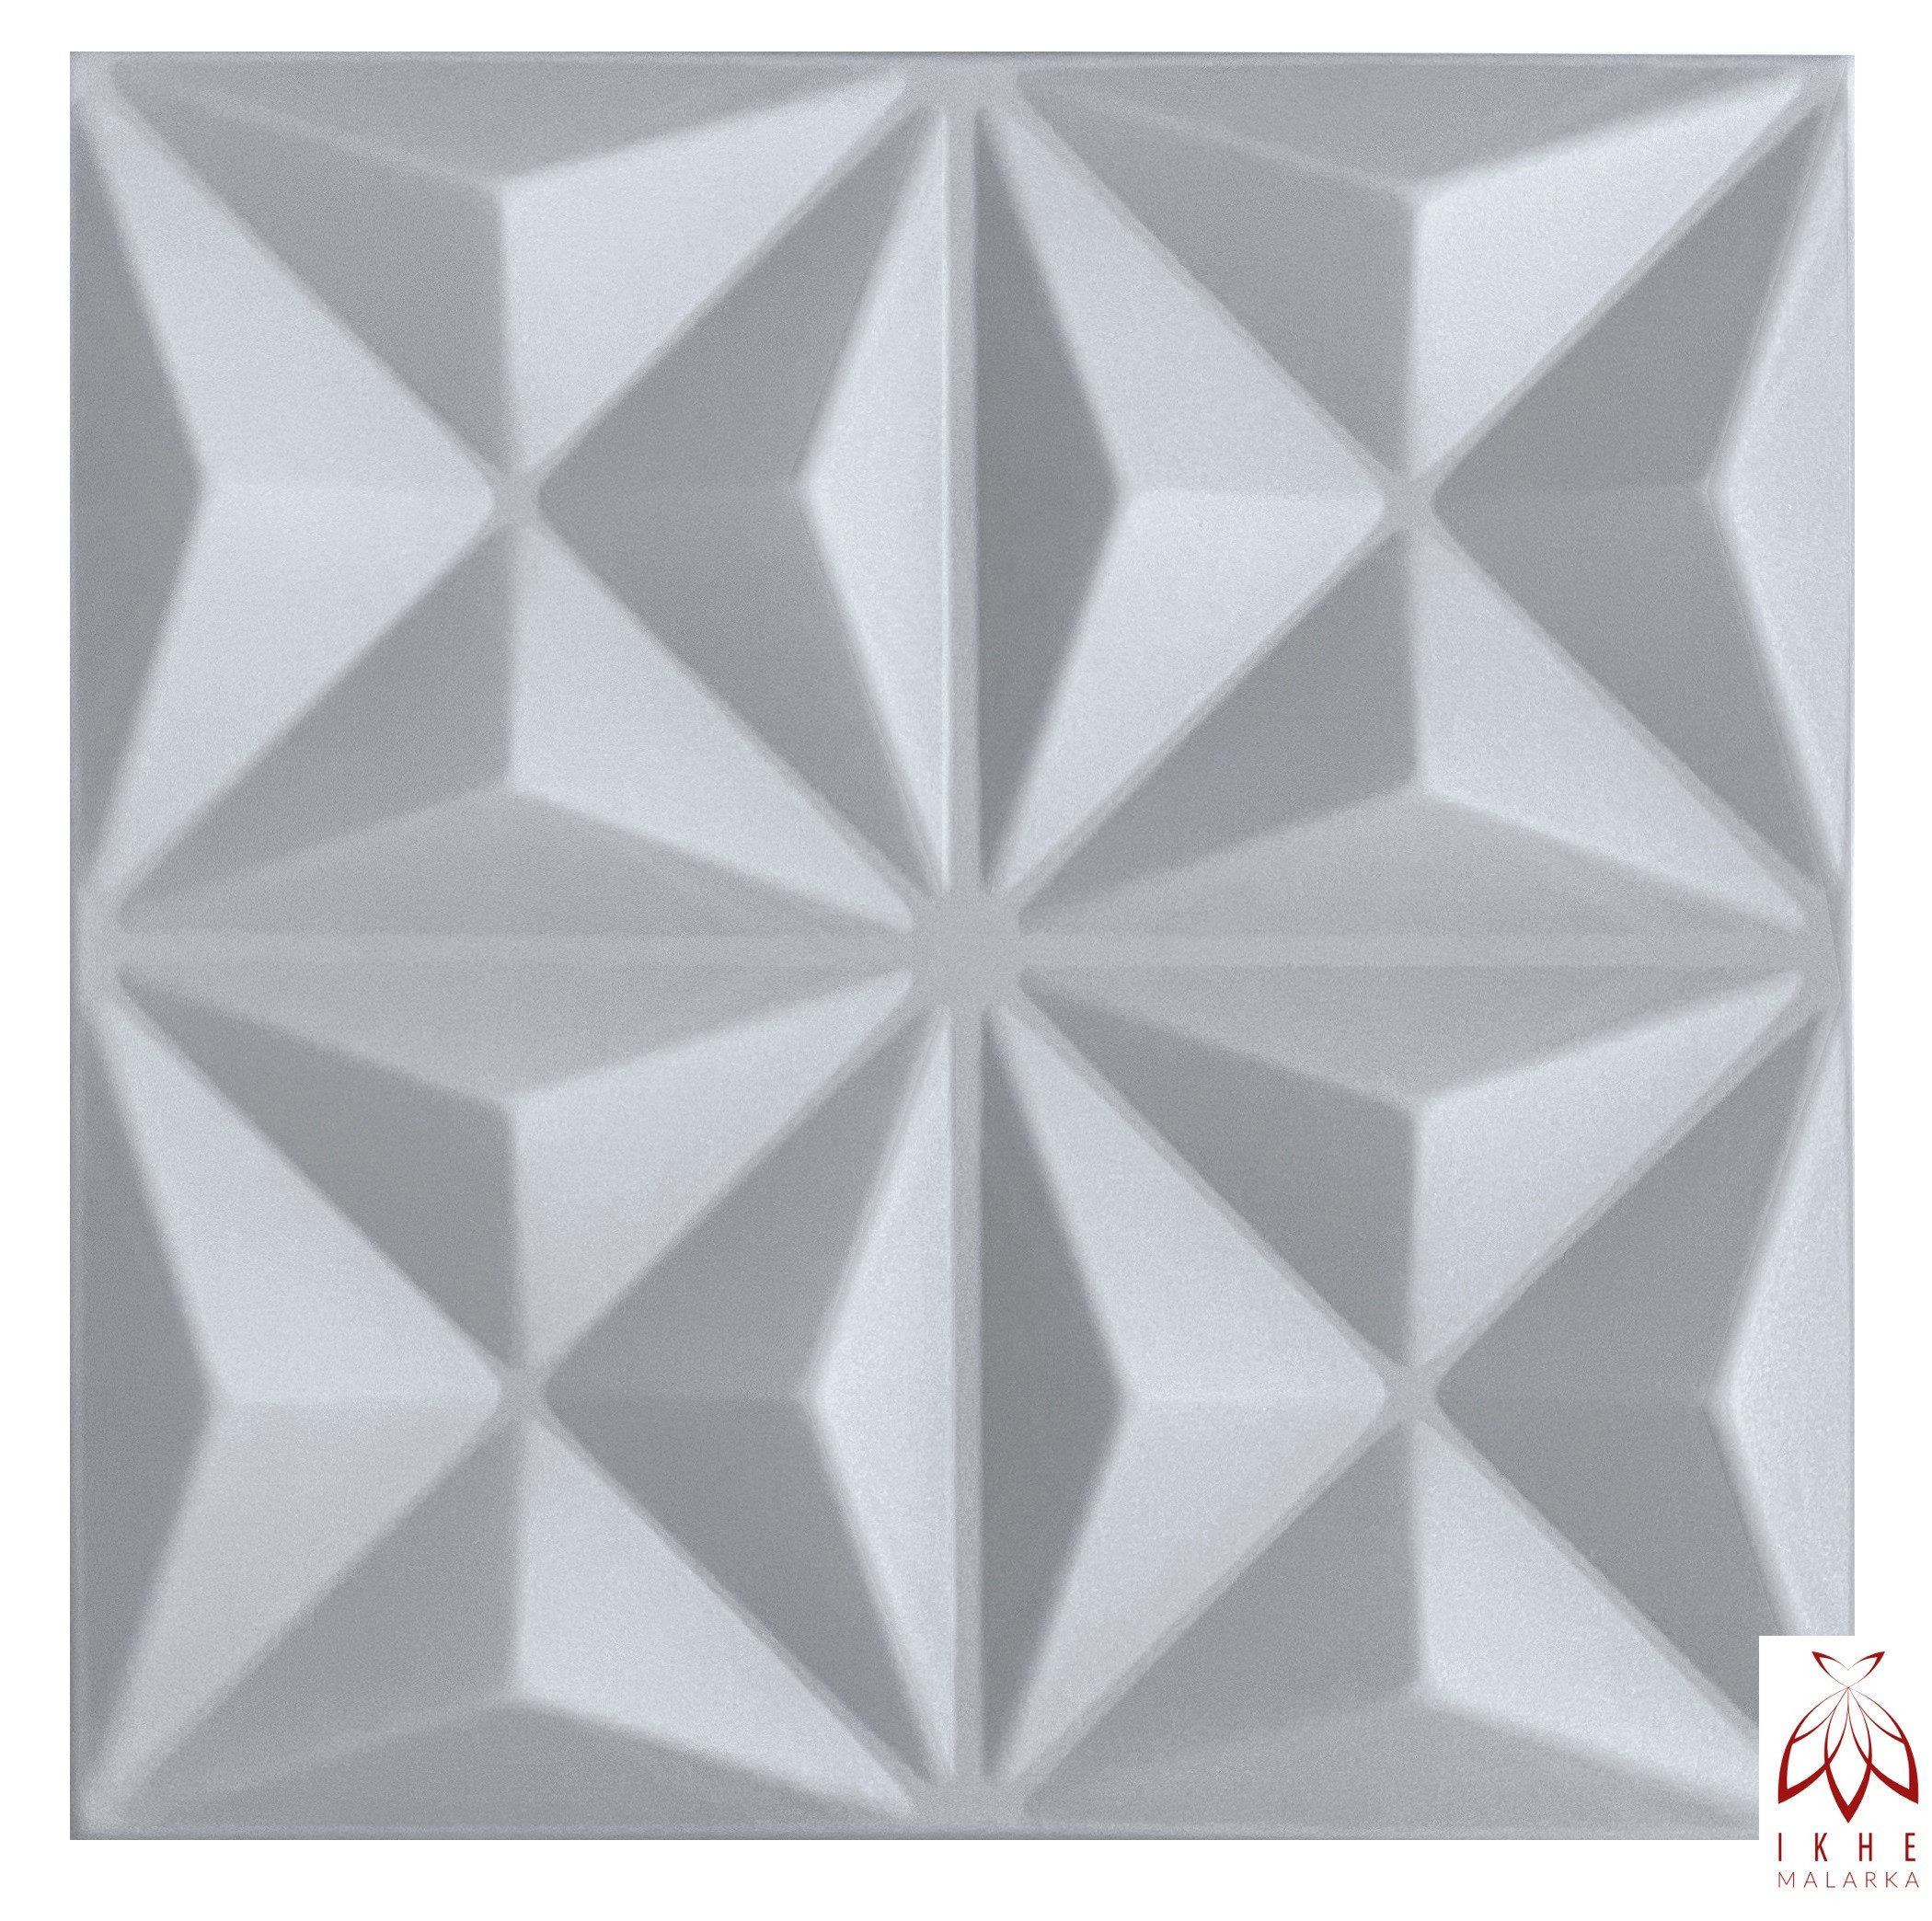 IKHEMalarka 3D Wandpaneel aus Polystyrol Styropor XPS 4m²/16 Stück, BxL: 50,00x50,00 cm, 0,25 qm, (16-tlg) 3D Paneelen für Decke oder Wand